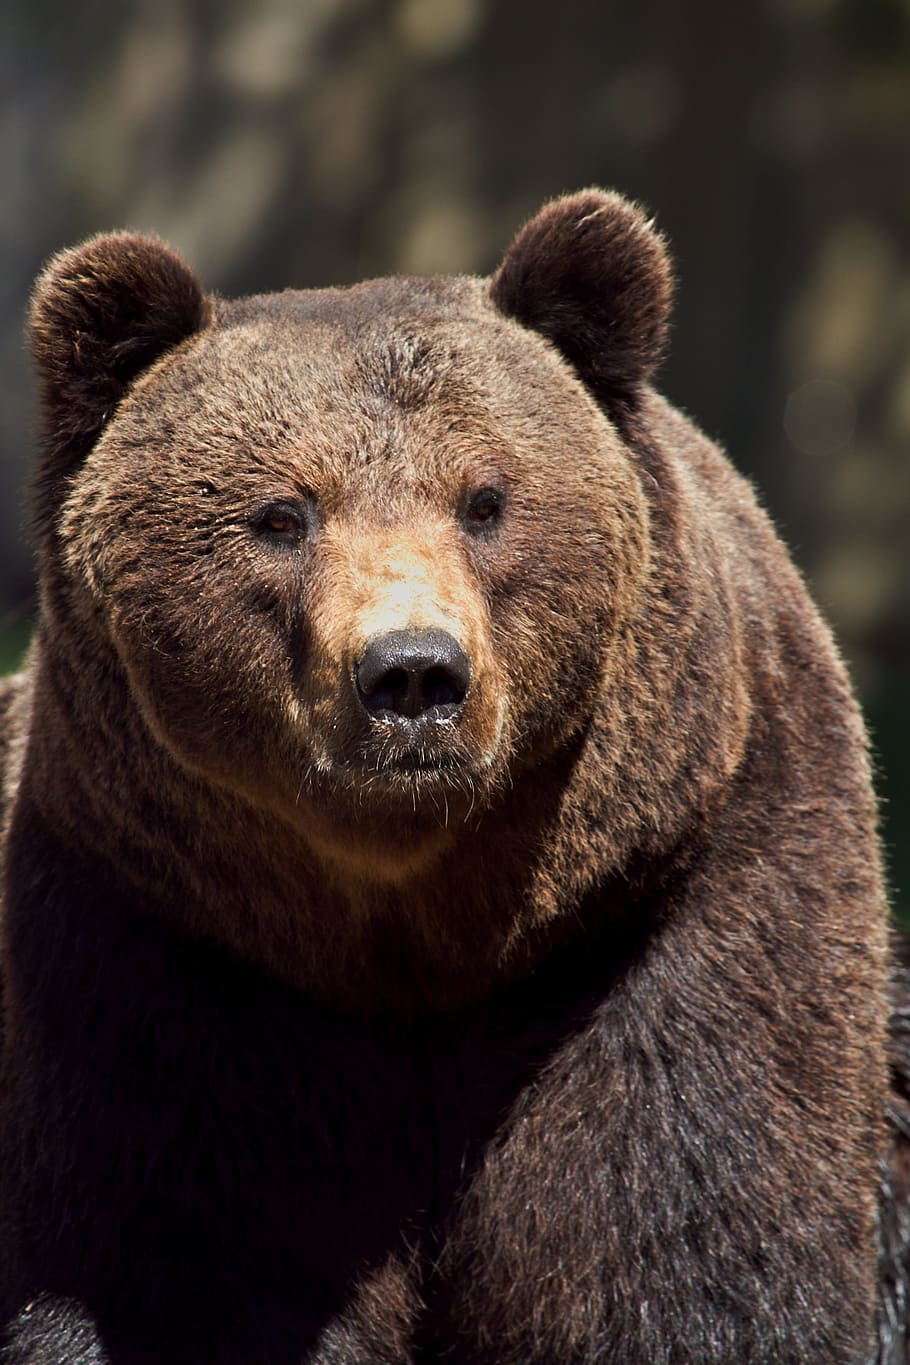 seletivo, fotografia de foco, marrom, urso pardo, urso, foco seletivo, fotografia, urso marrom, animal, mamífero